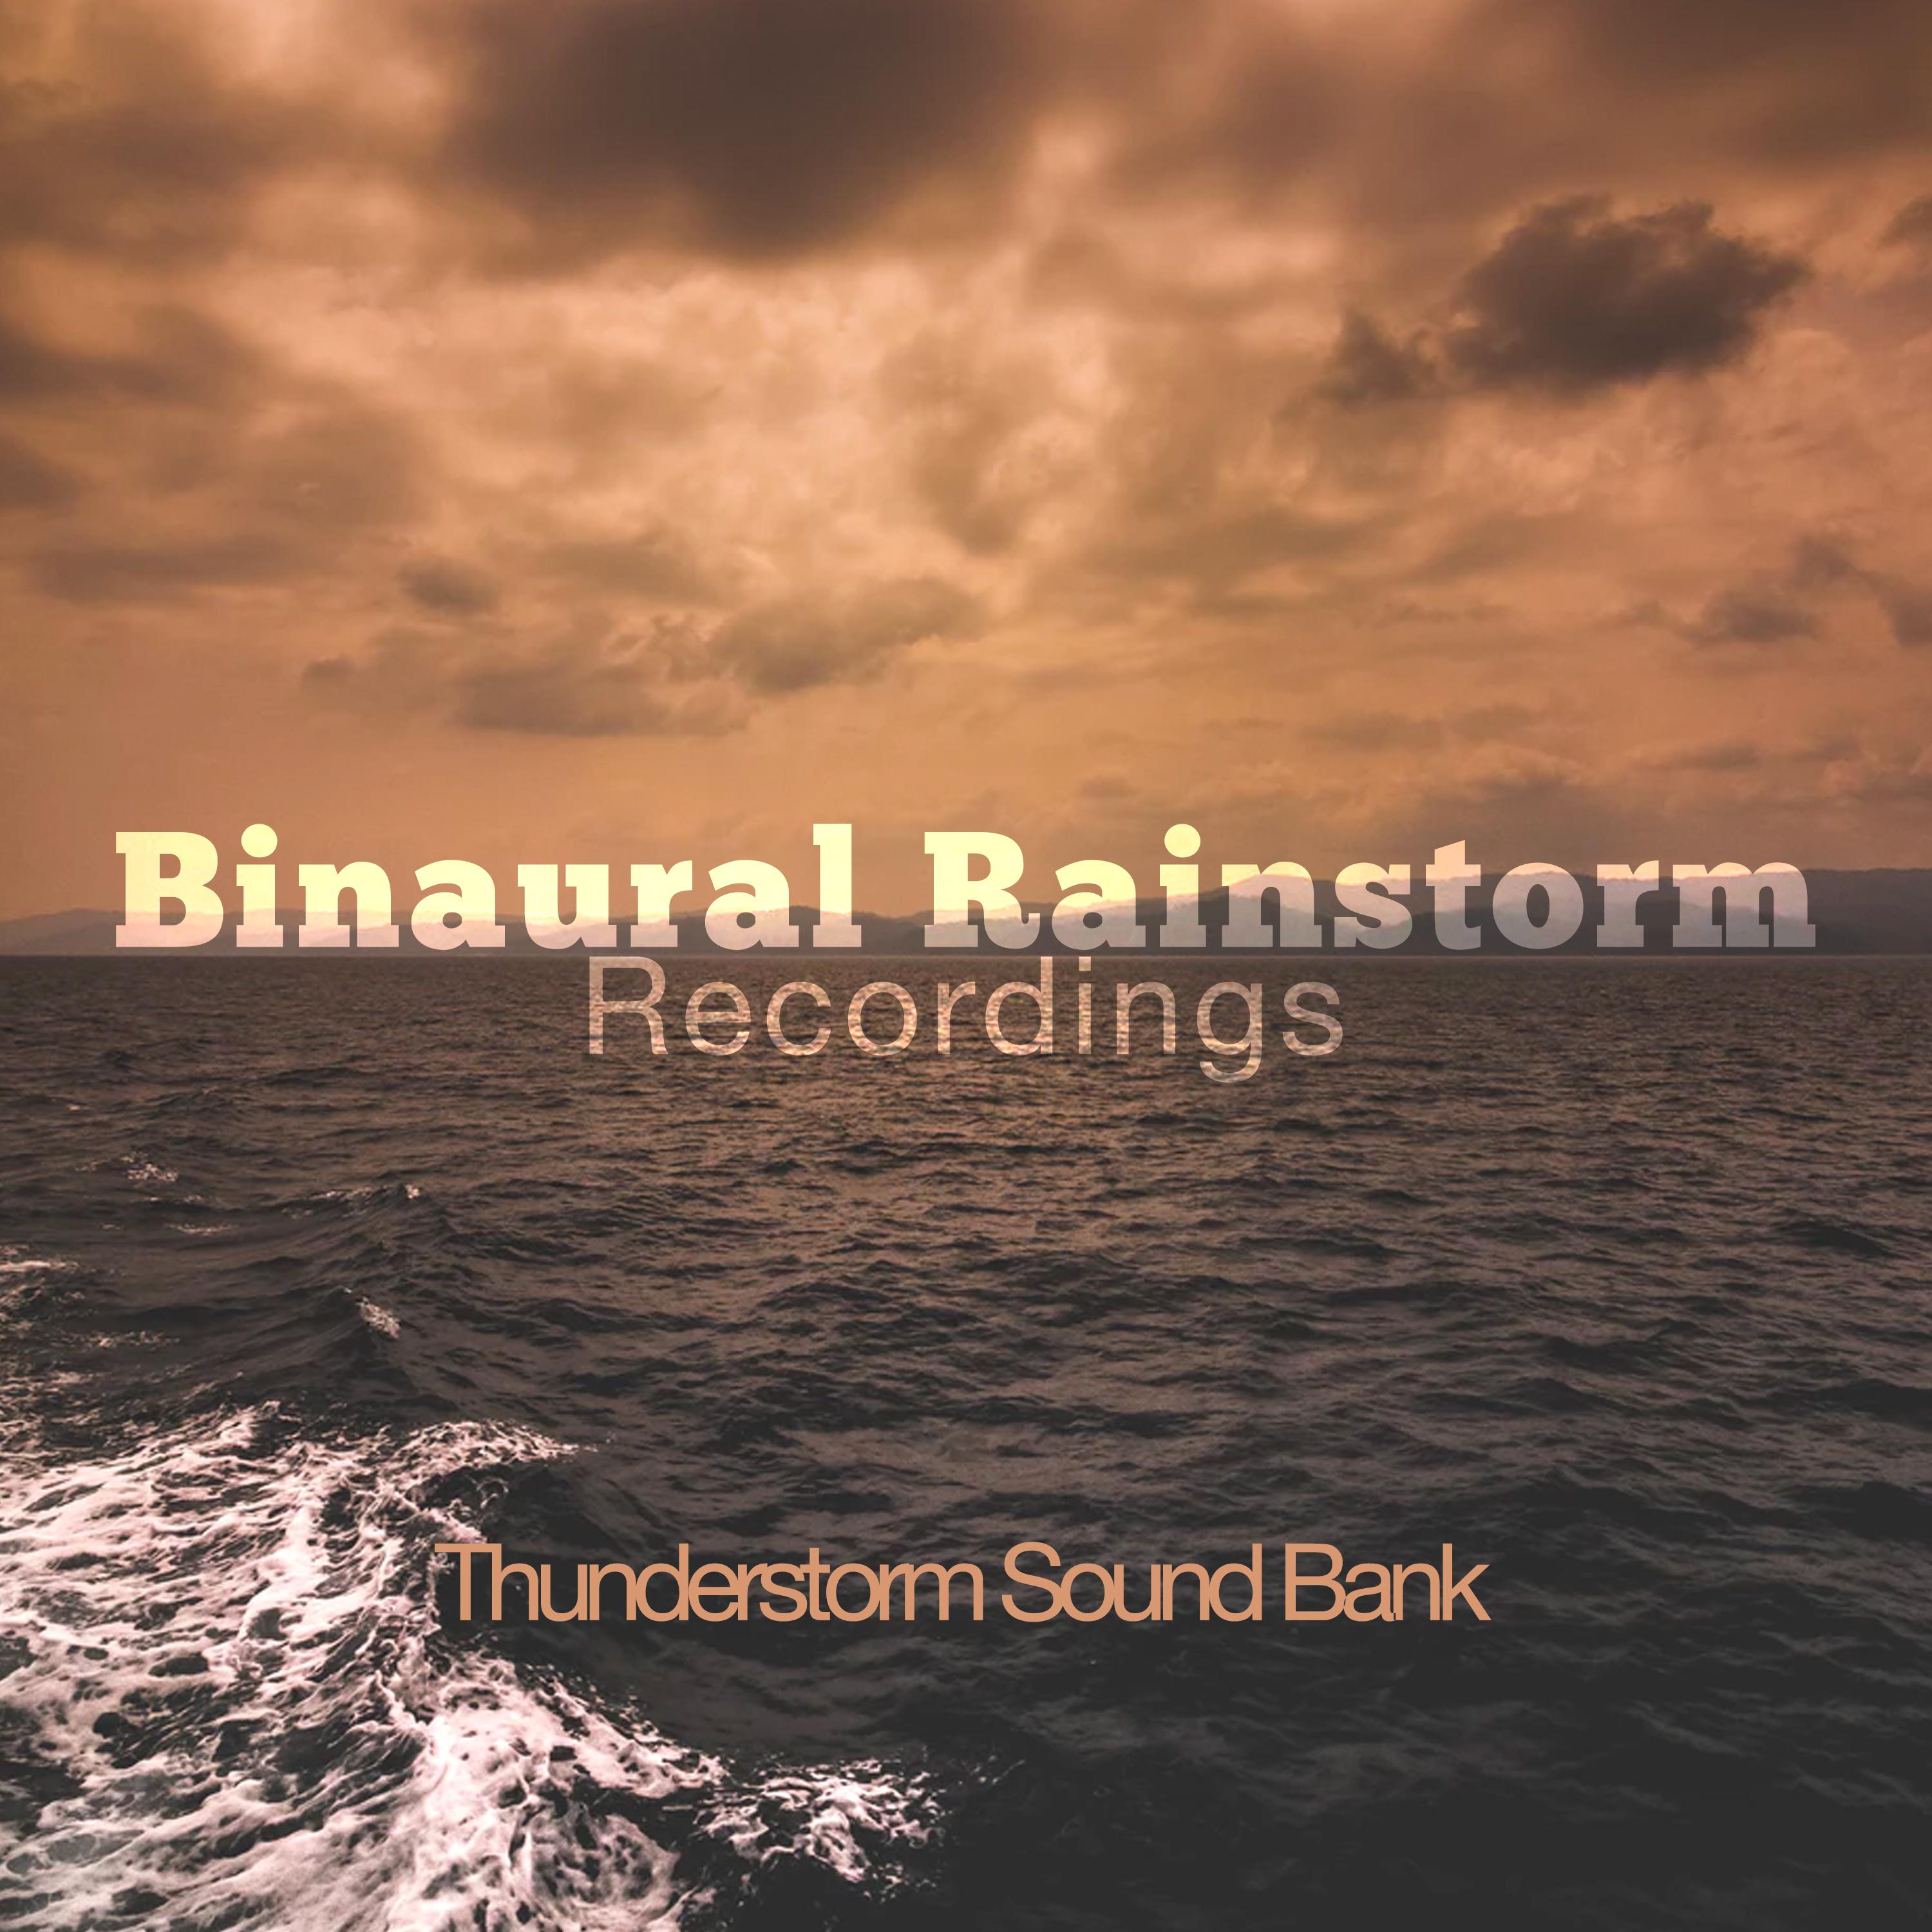 Binaural Rainstorm Recordings